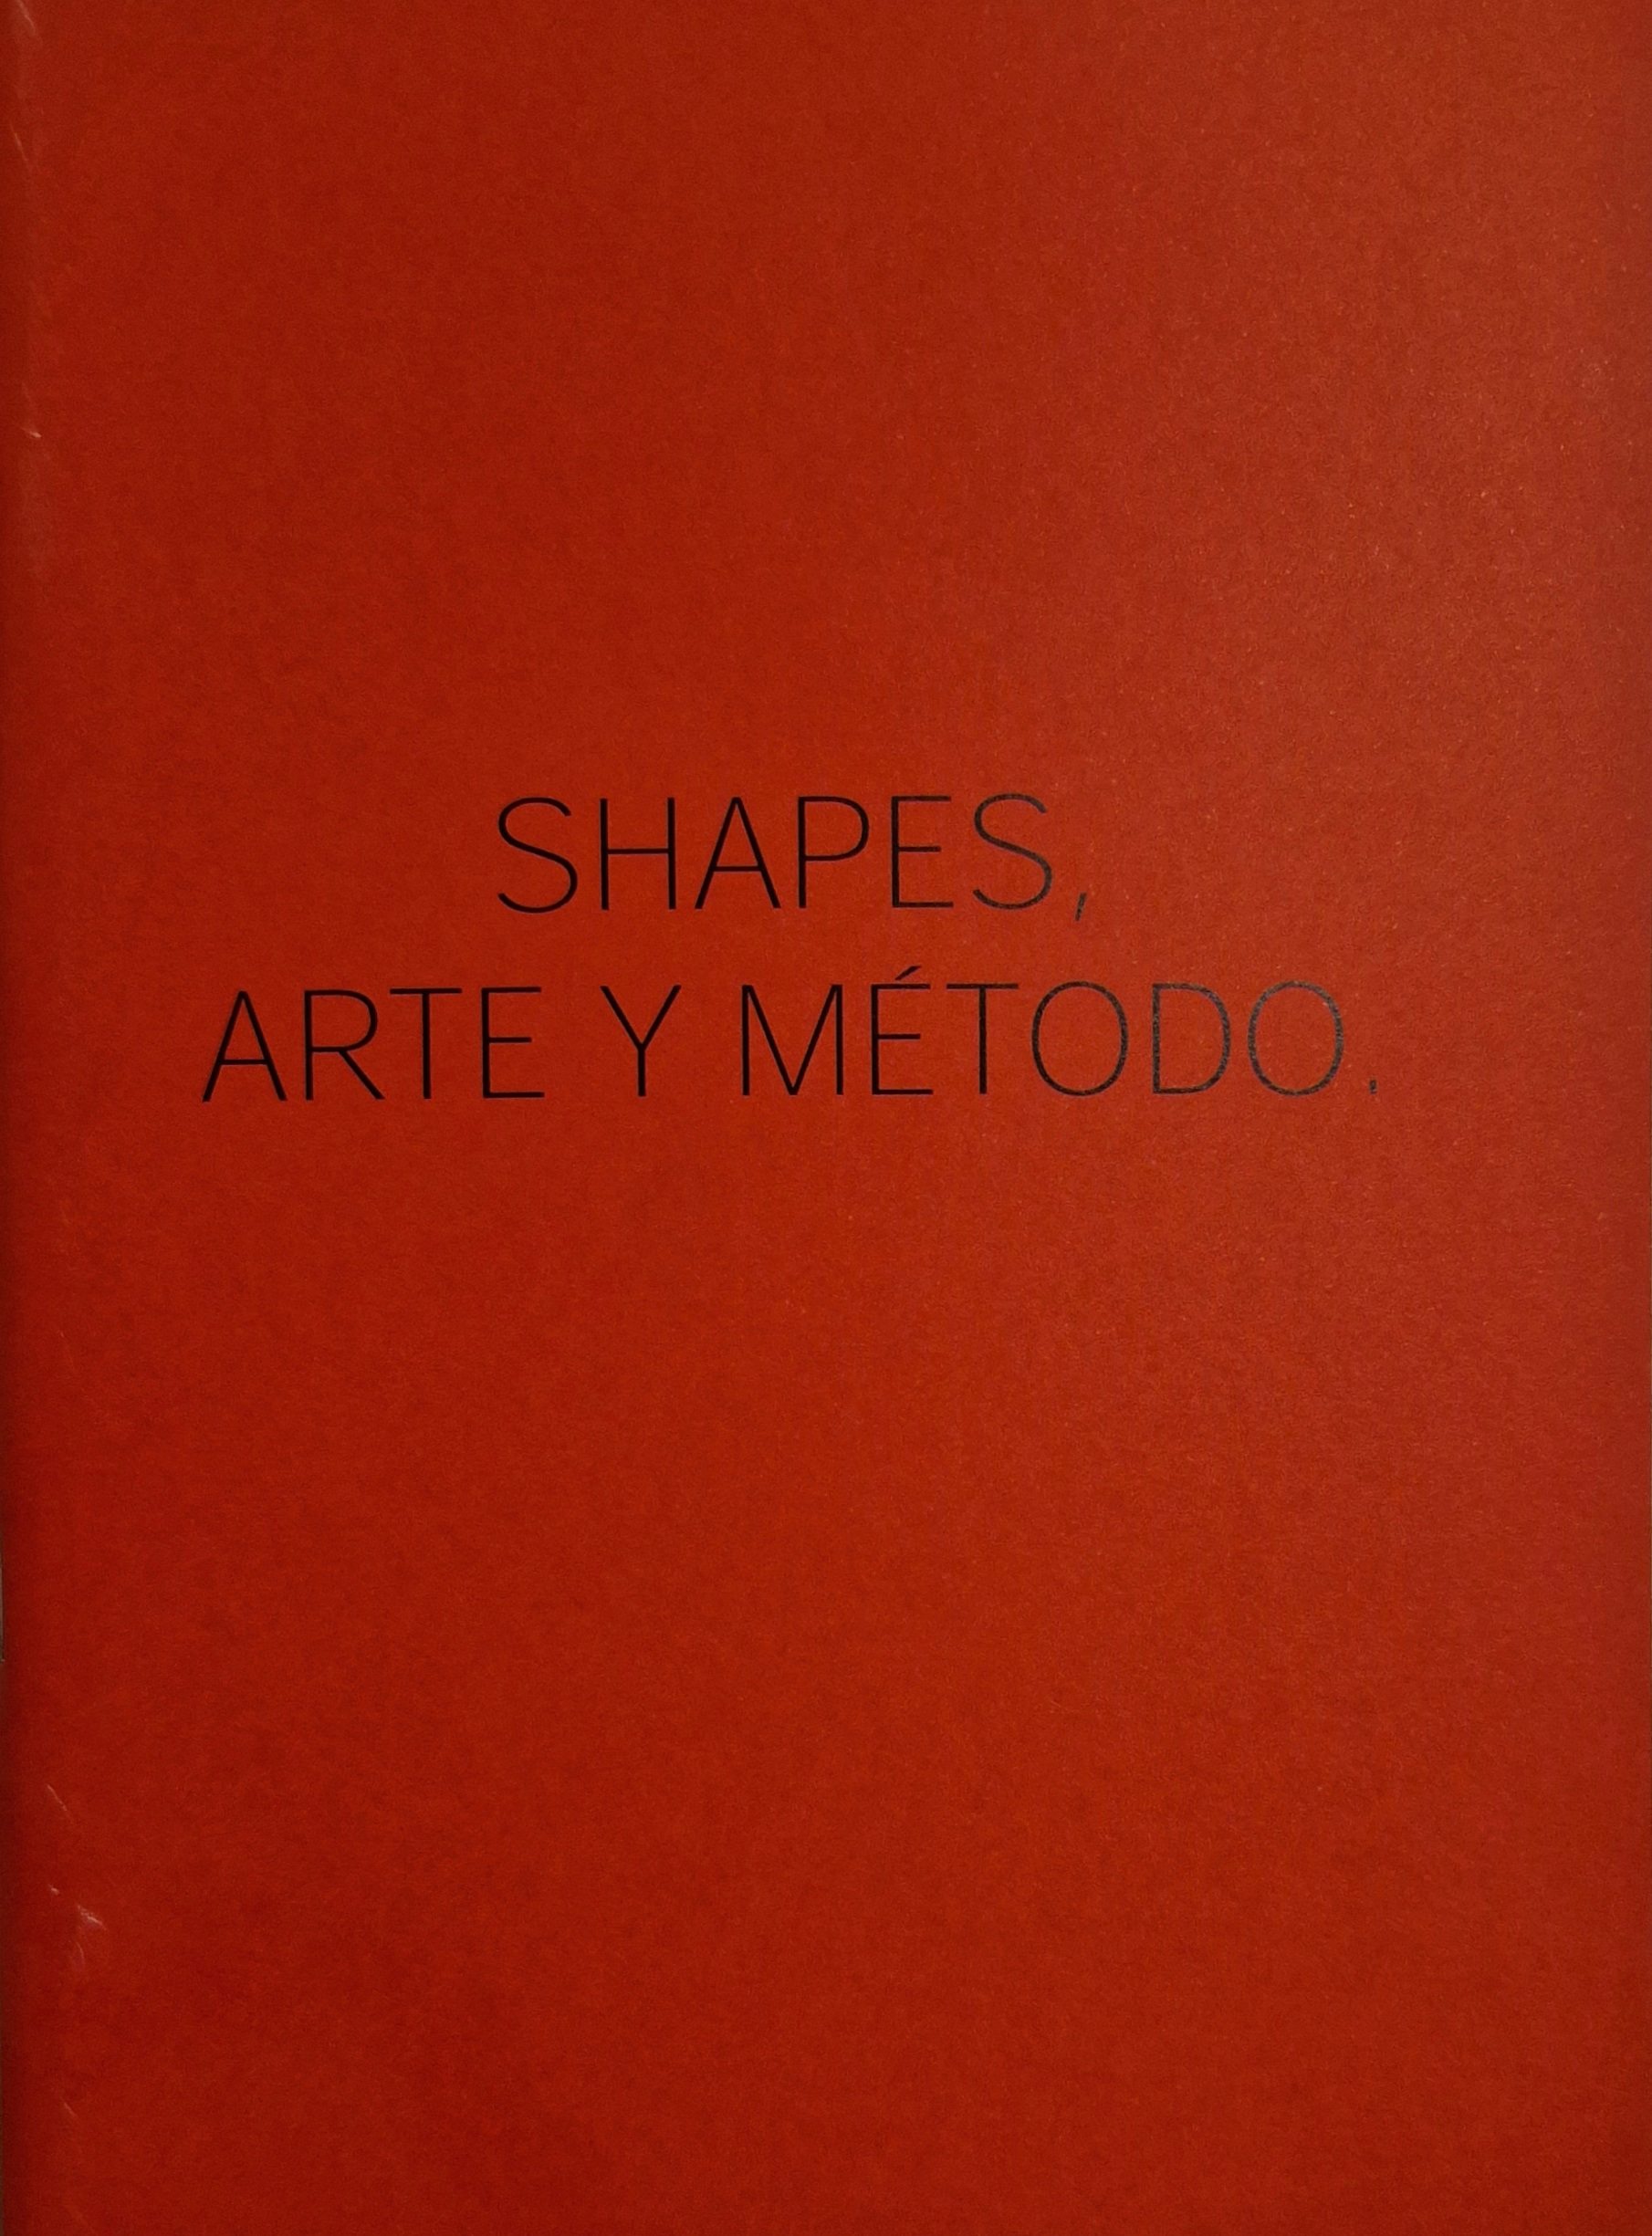 Juan Cuenca. Shapes. Art and Method